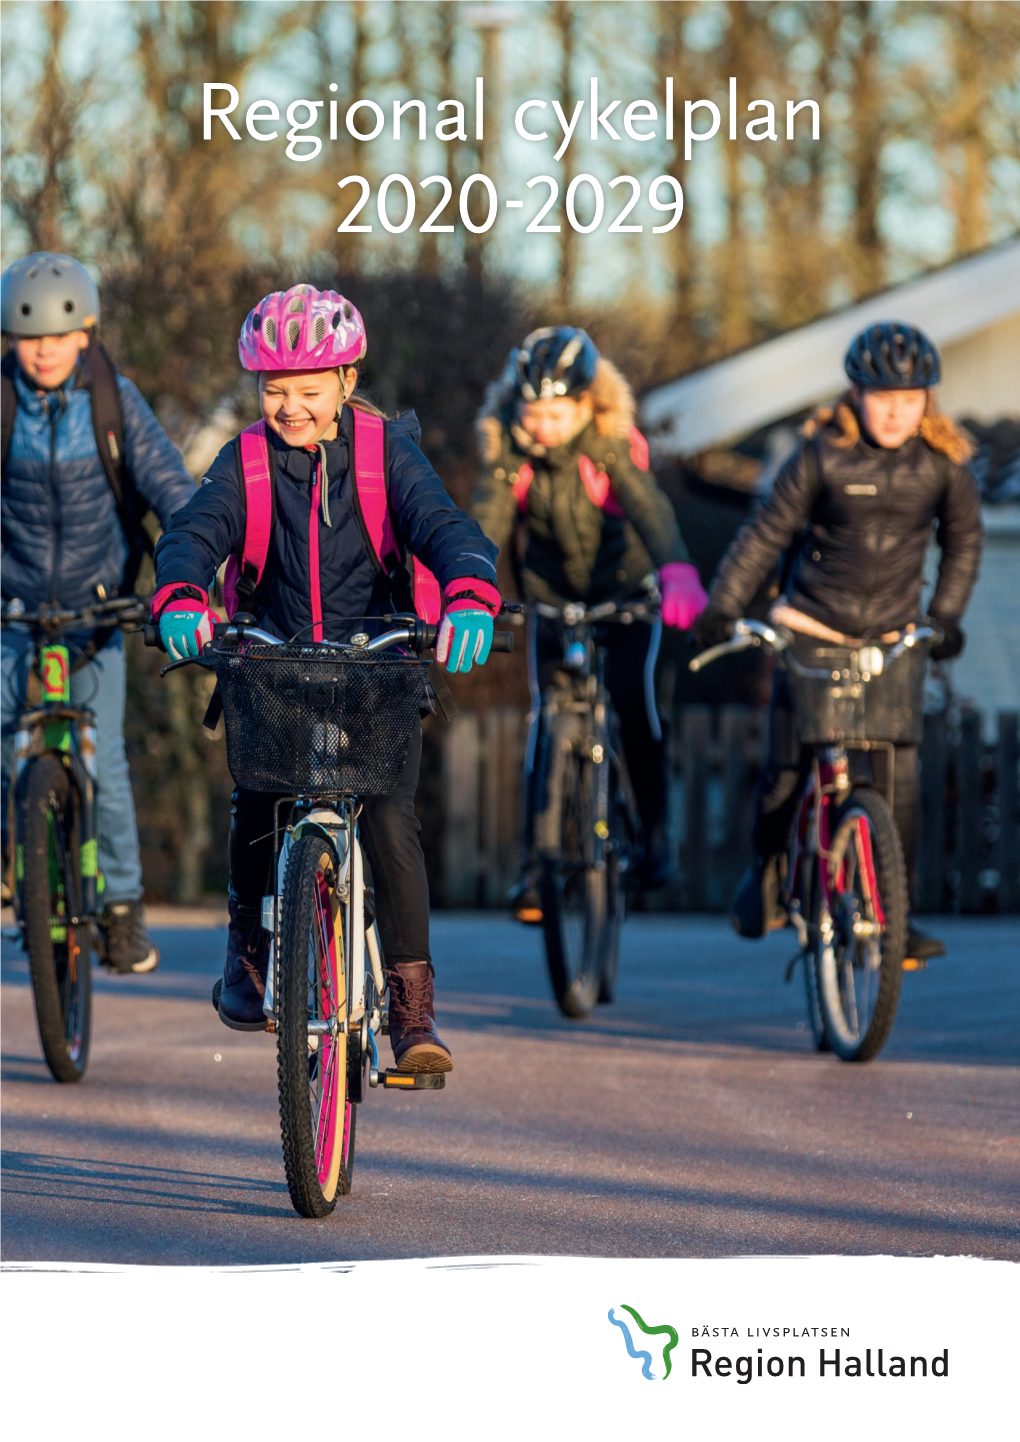 Regional Cykelplan 2020-2029 Projektansvarig: Åse Allberg, Region Halland